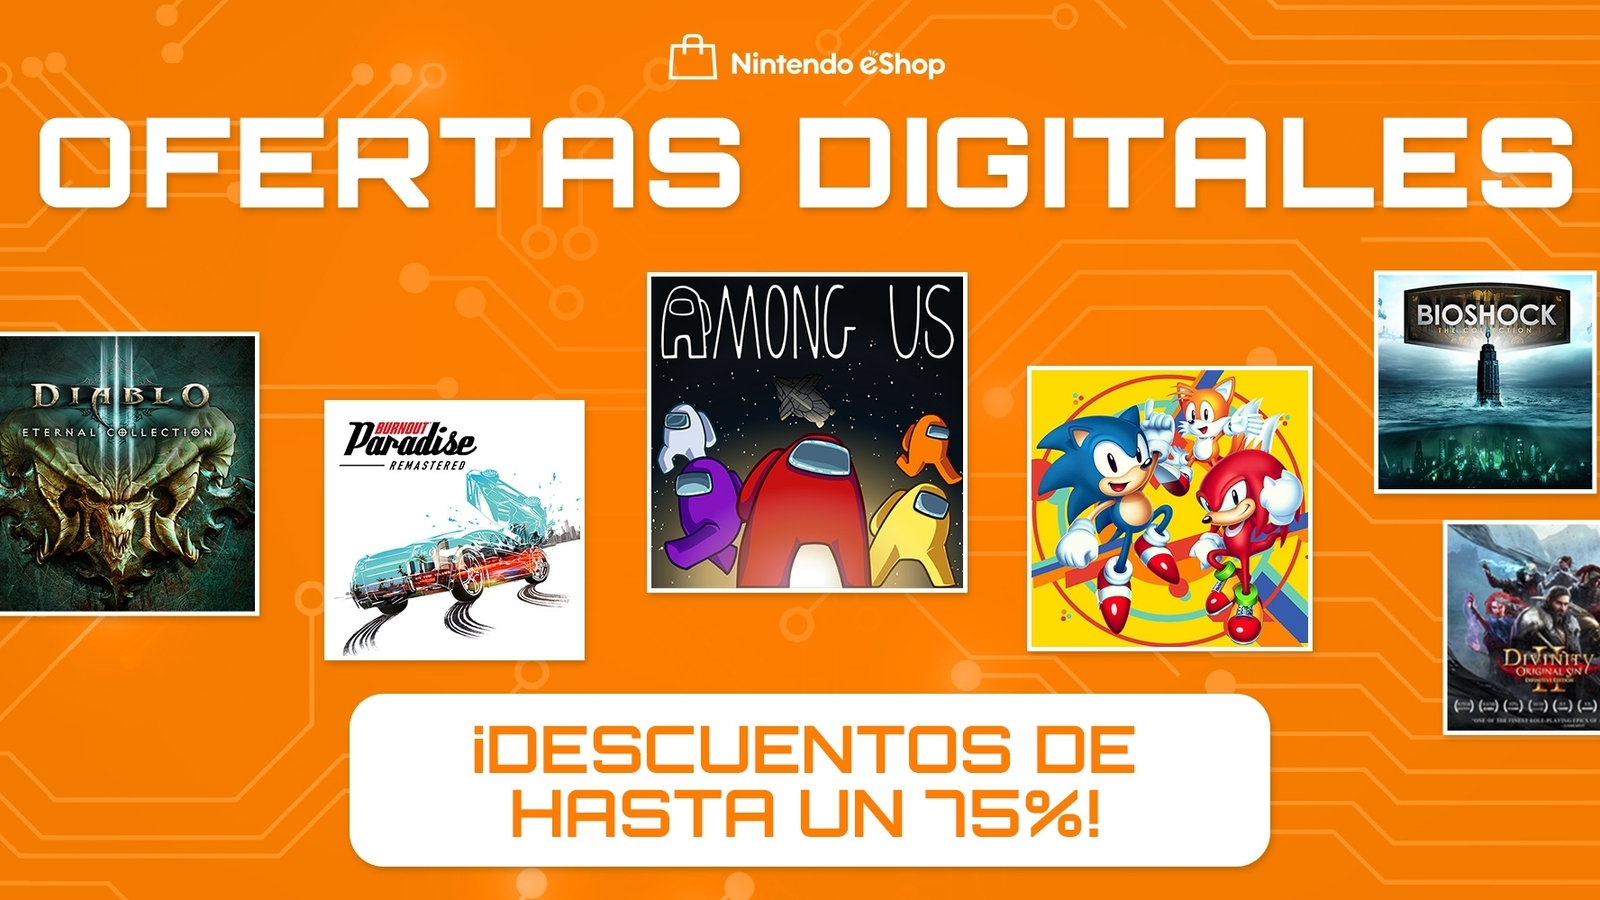 Correspondiente Loco lantano Nuevas "Ofertas Digitales" en la eShop de Nintendo Switch | Eurogamer.es